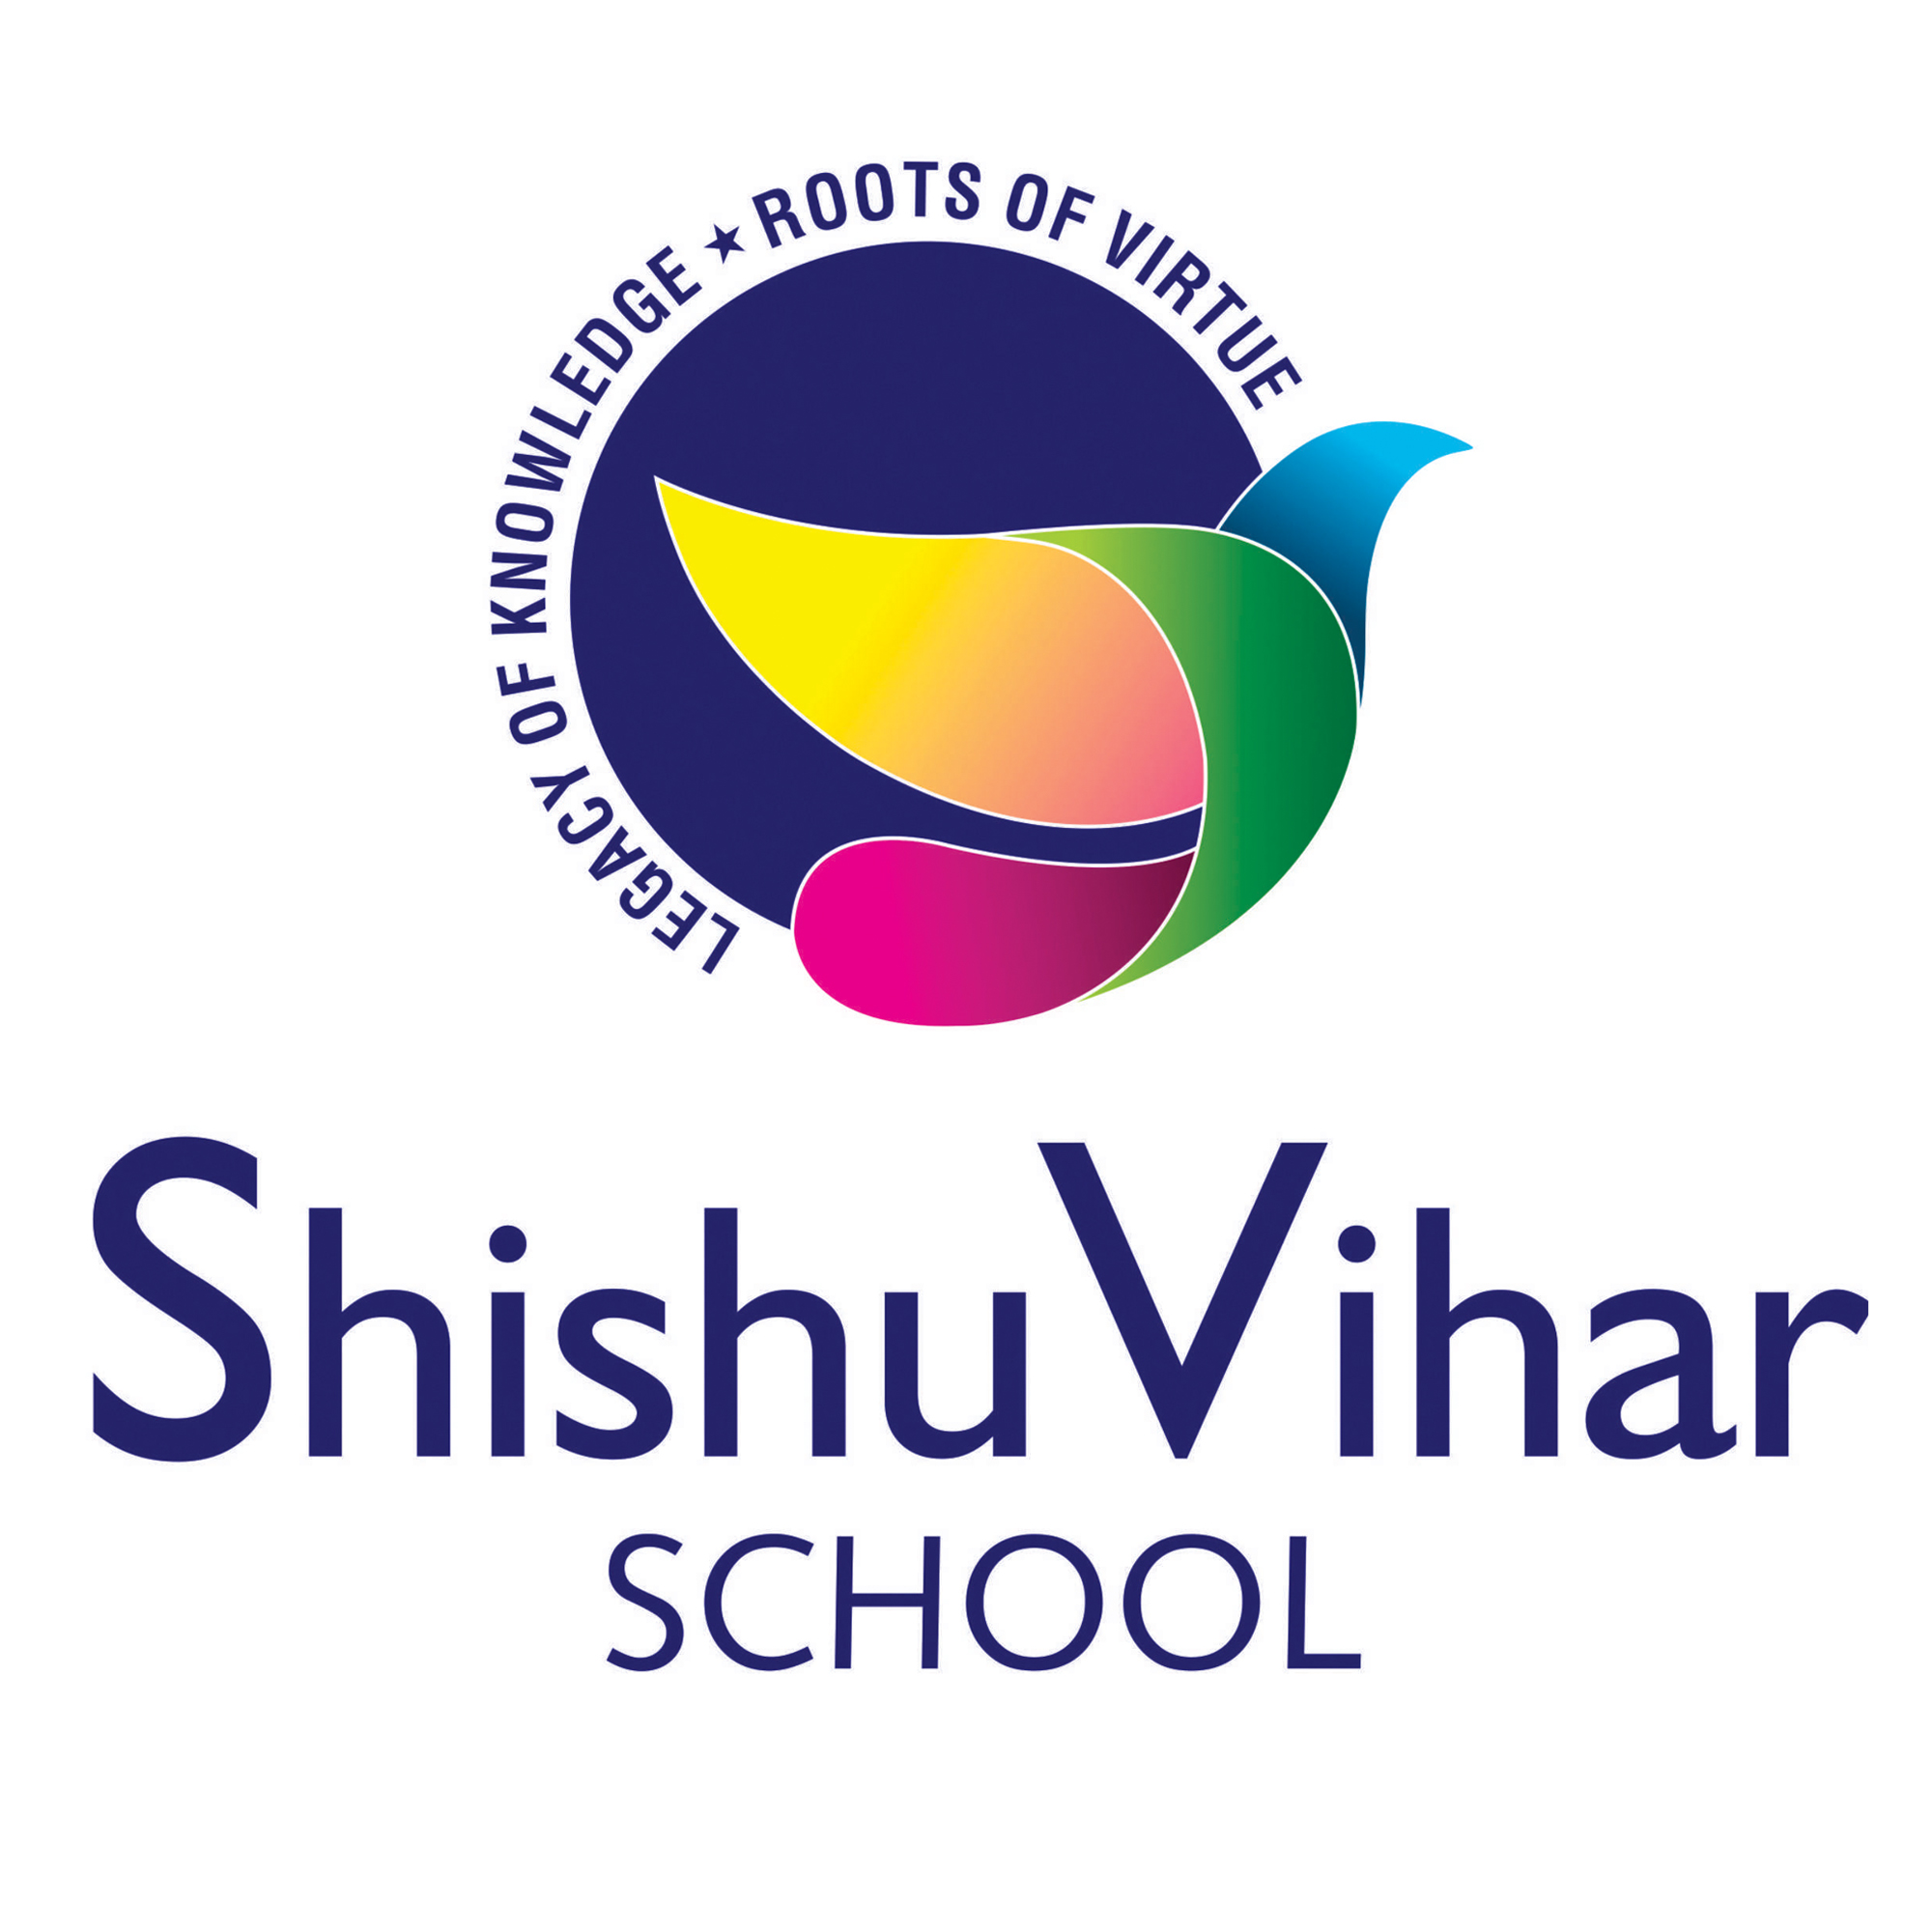 Shishuvihar School